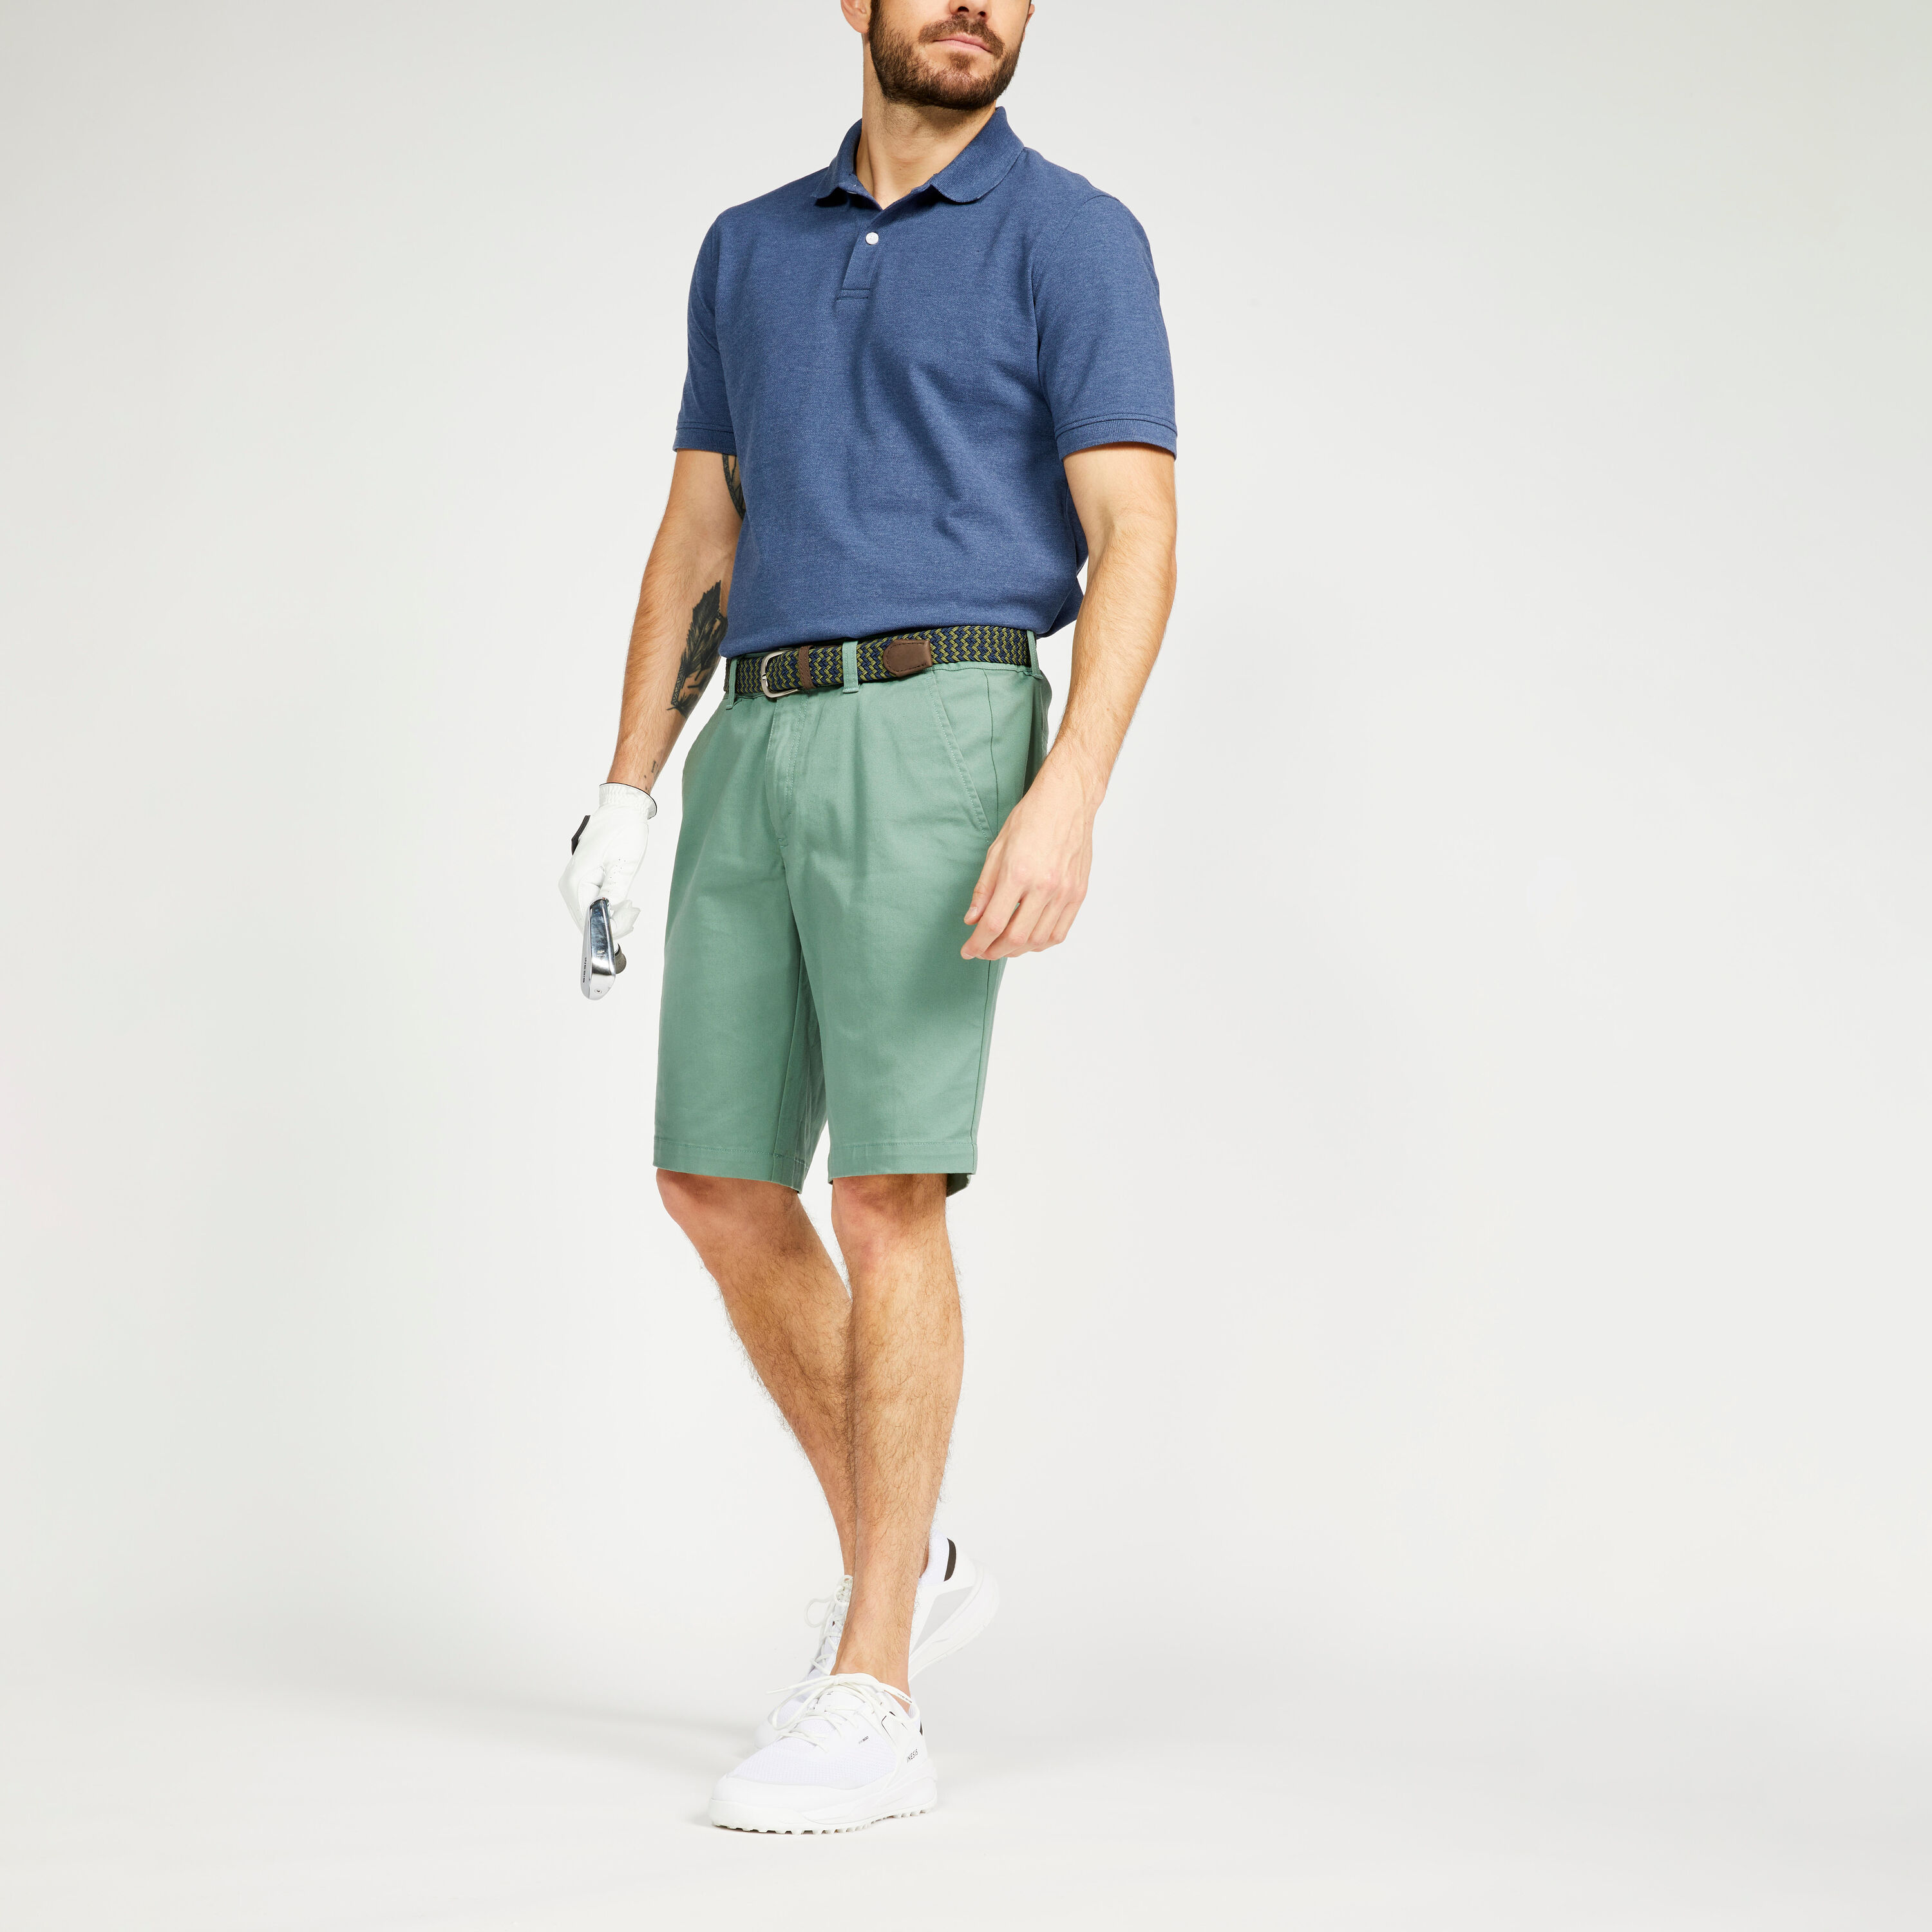 INESIS Men's golf chino shorts - MW500 green